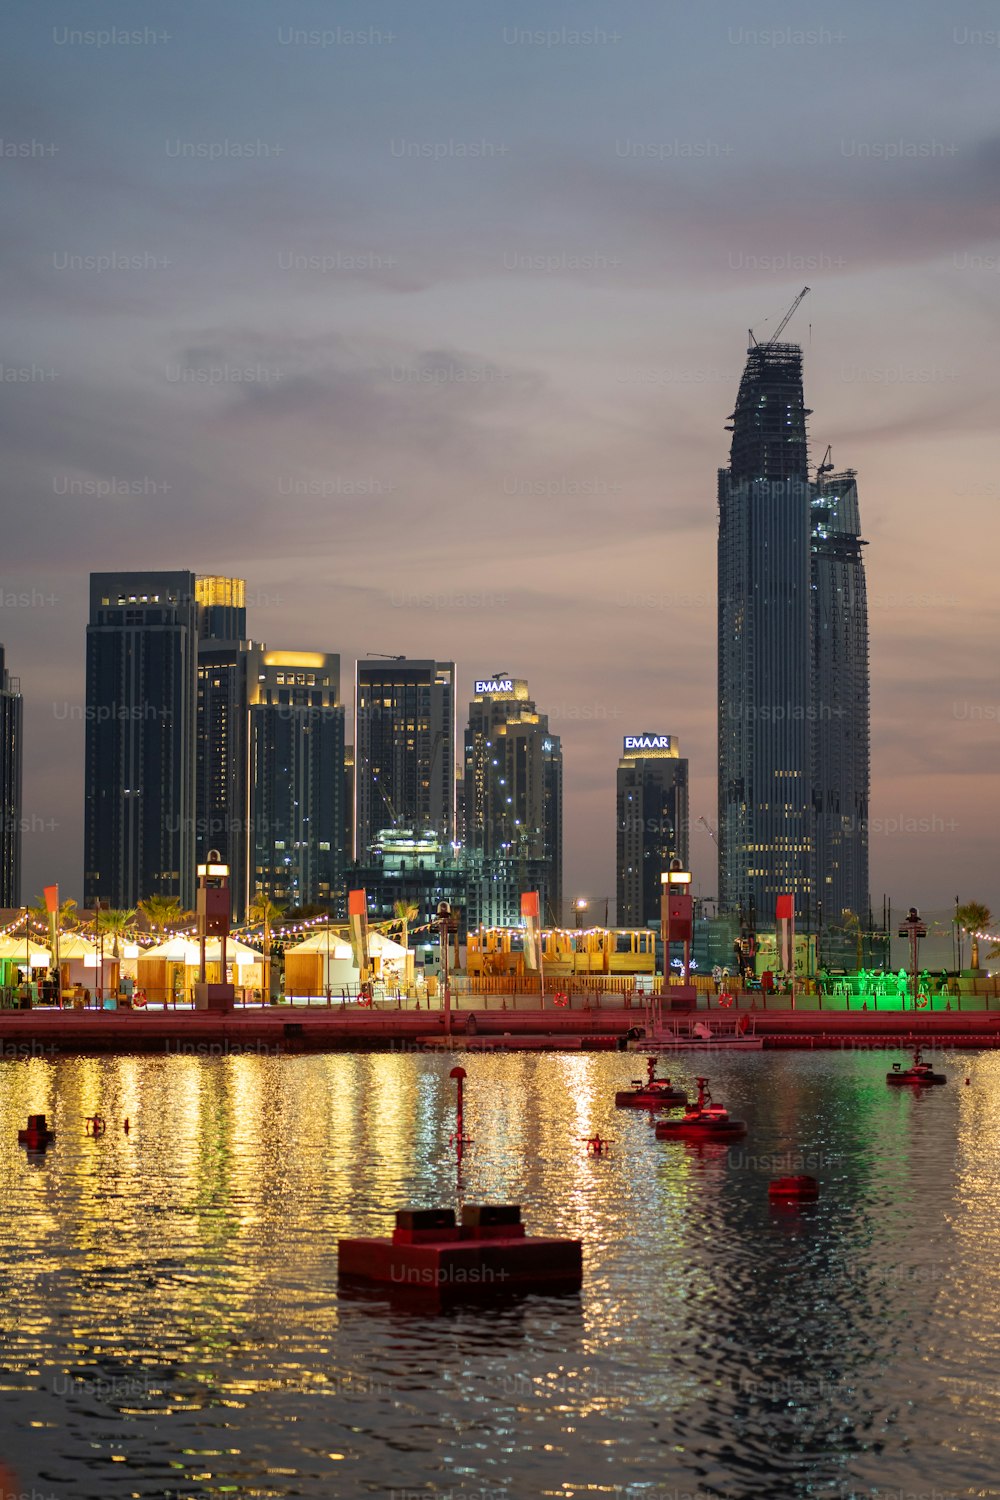 Edifici dello skyline della città del festival di Dubai durante i soli